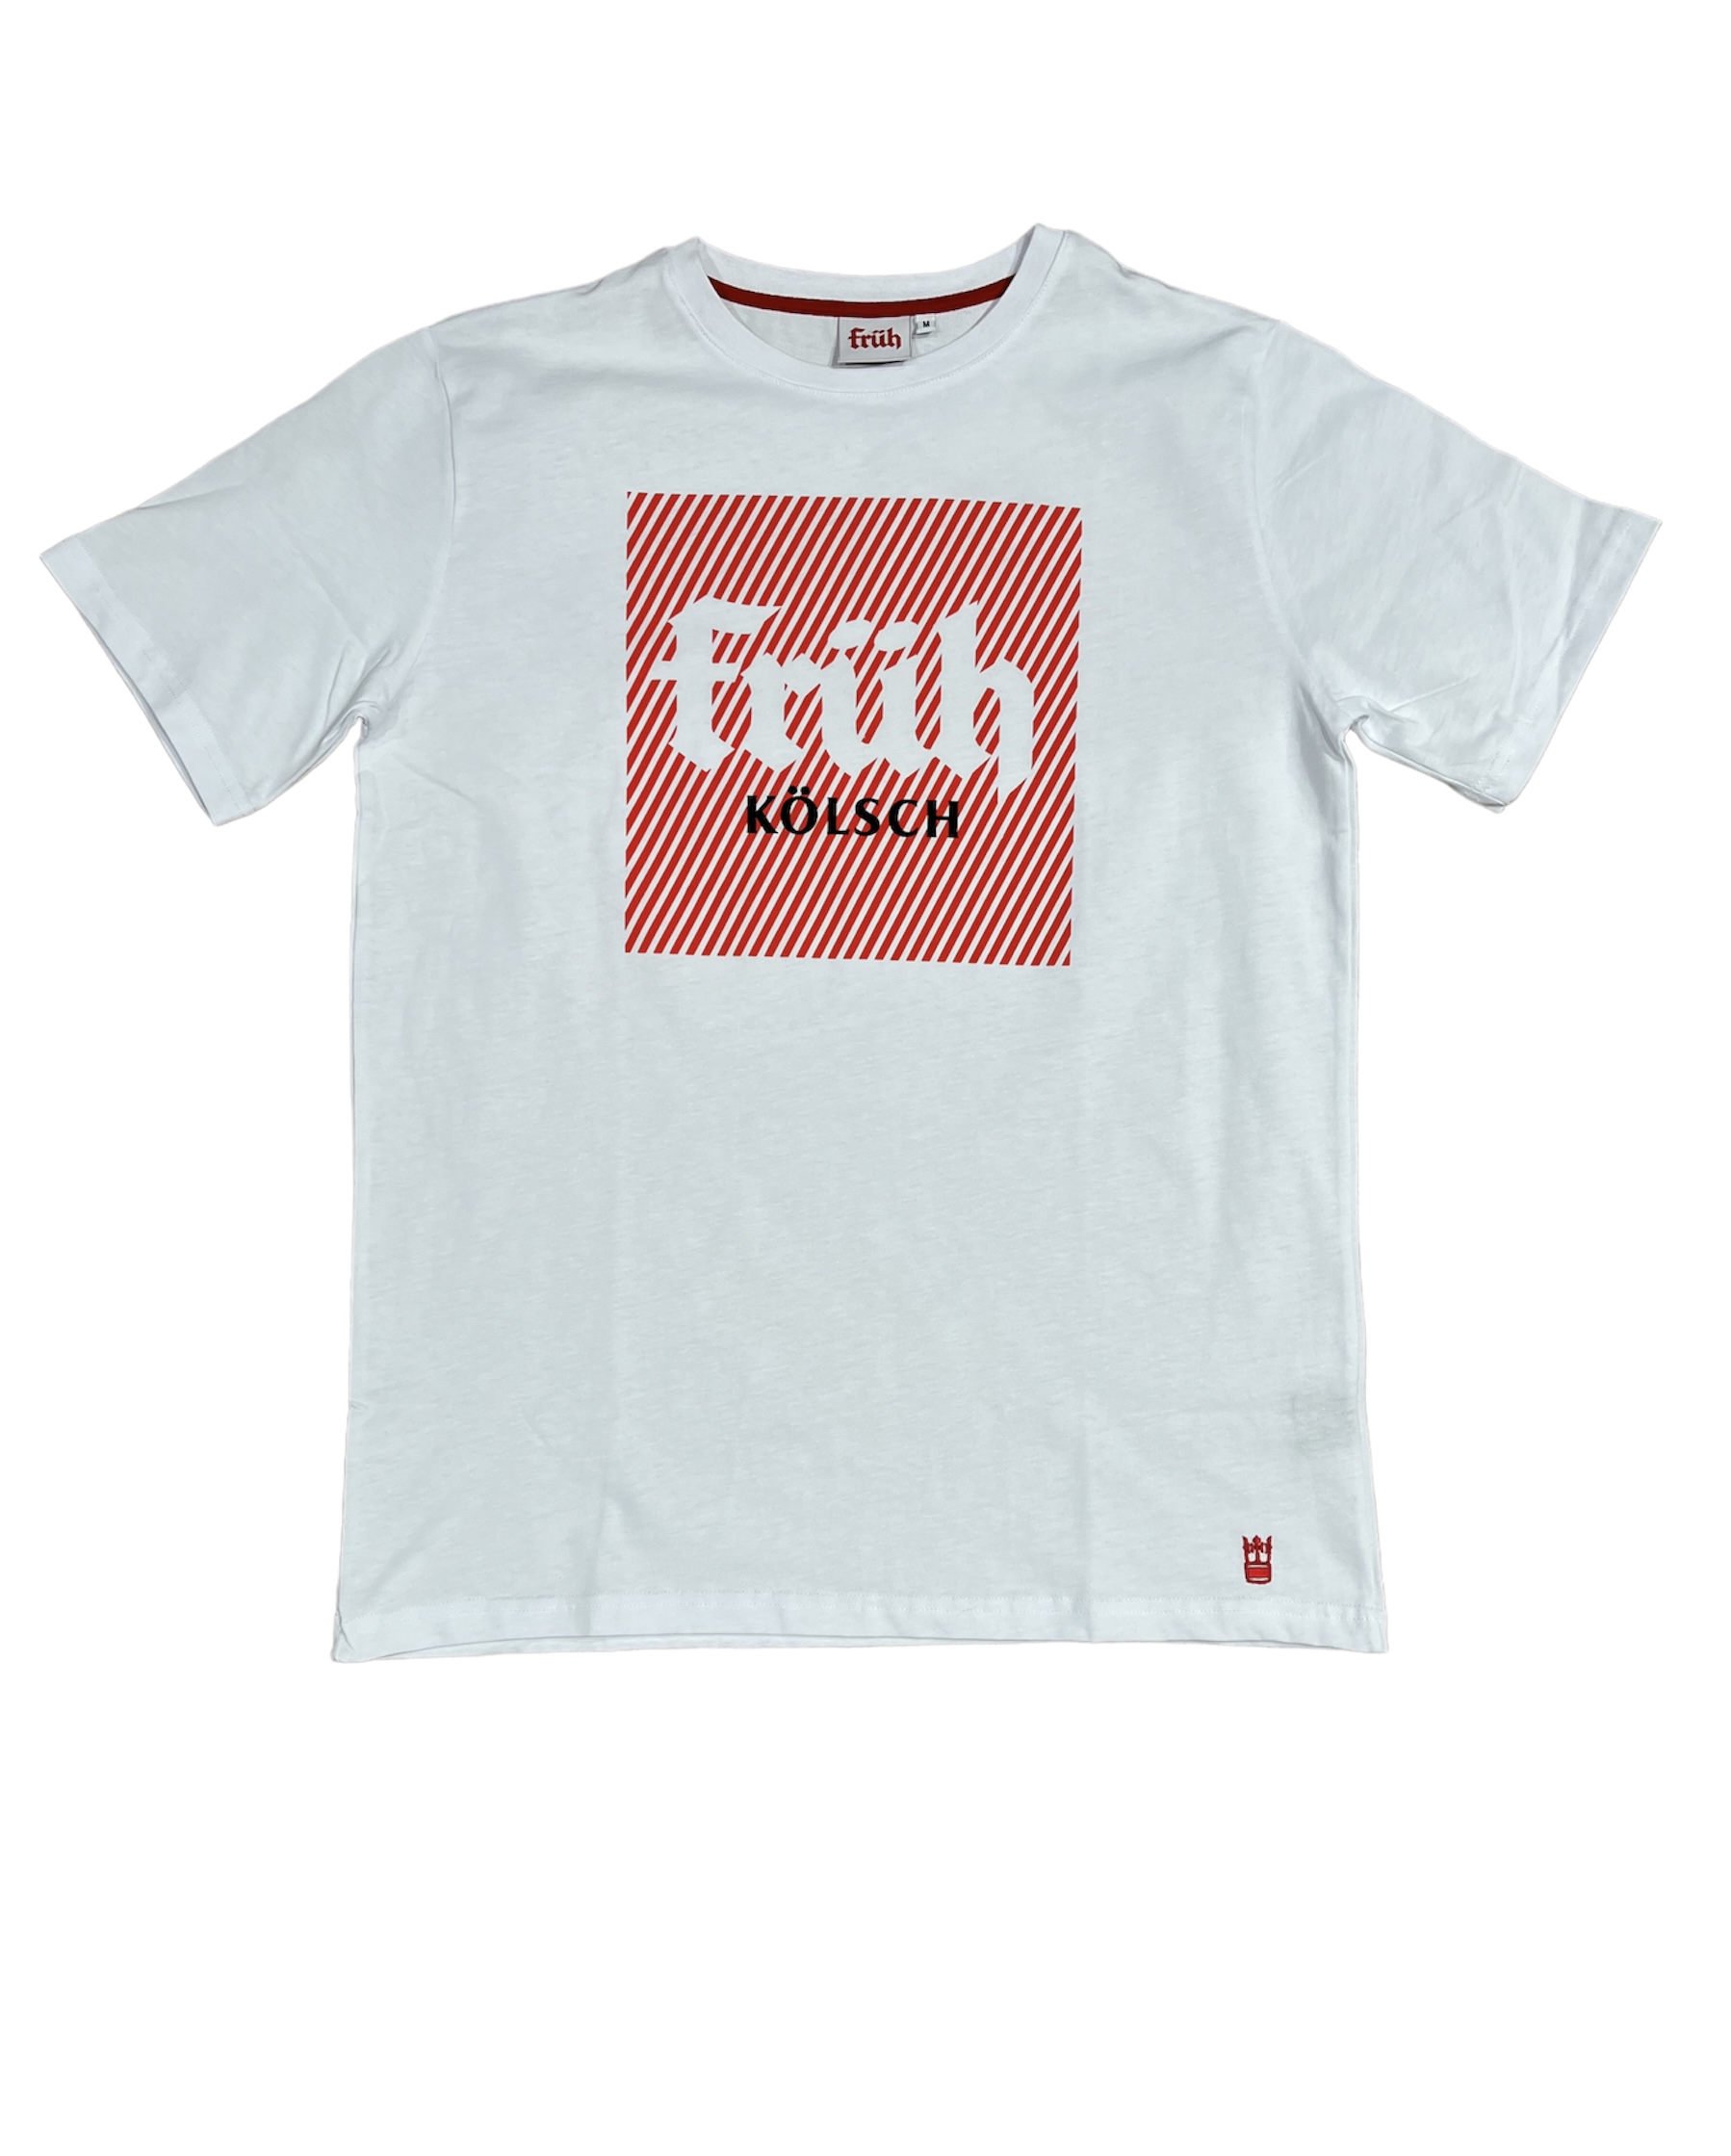 Früh Shirt weiss mit Früh Quadrat Logo